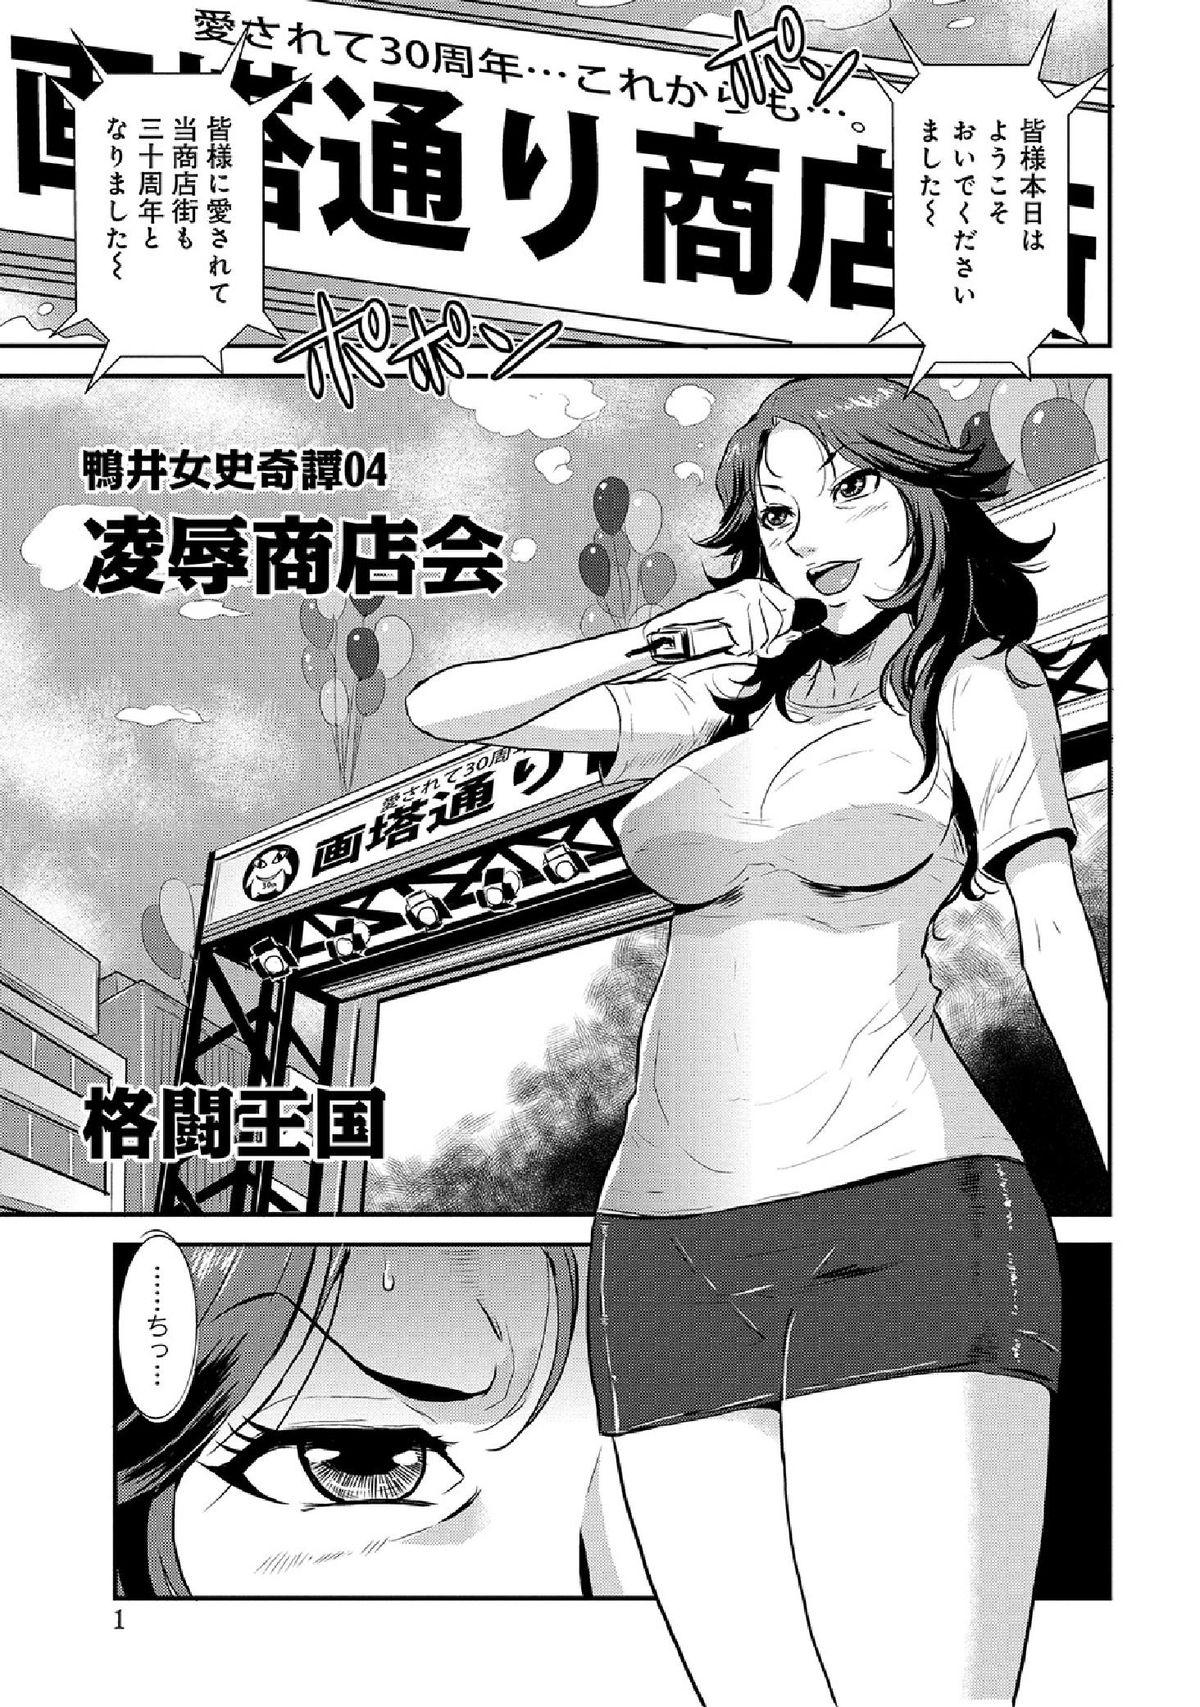 WEB Han Comic Geki Yaba! Vol.52 148